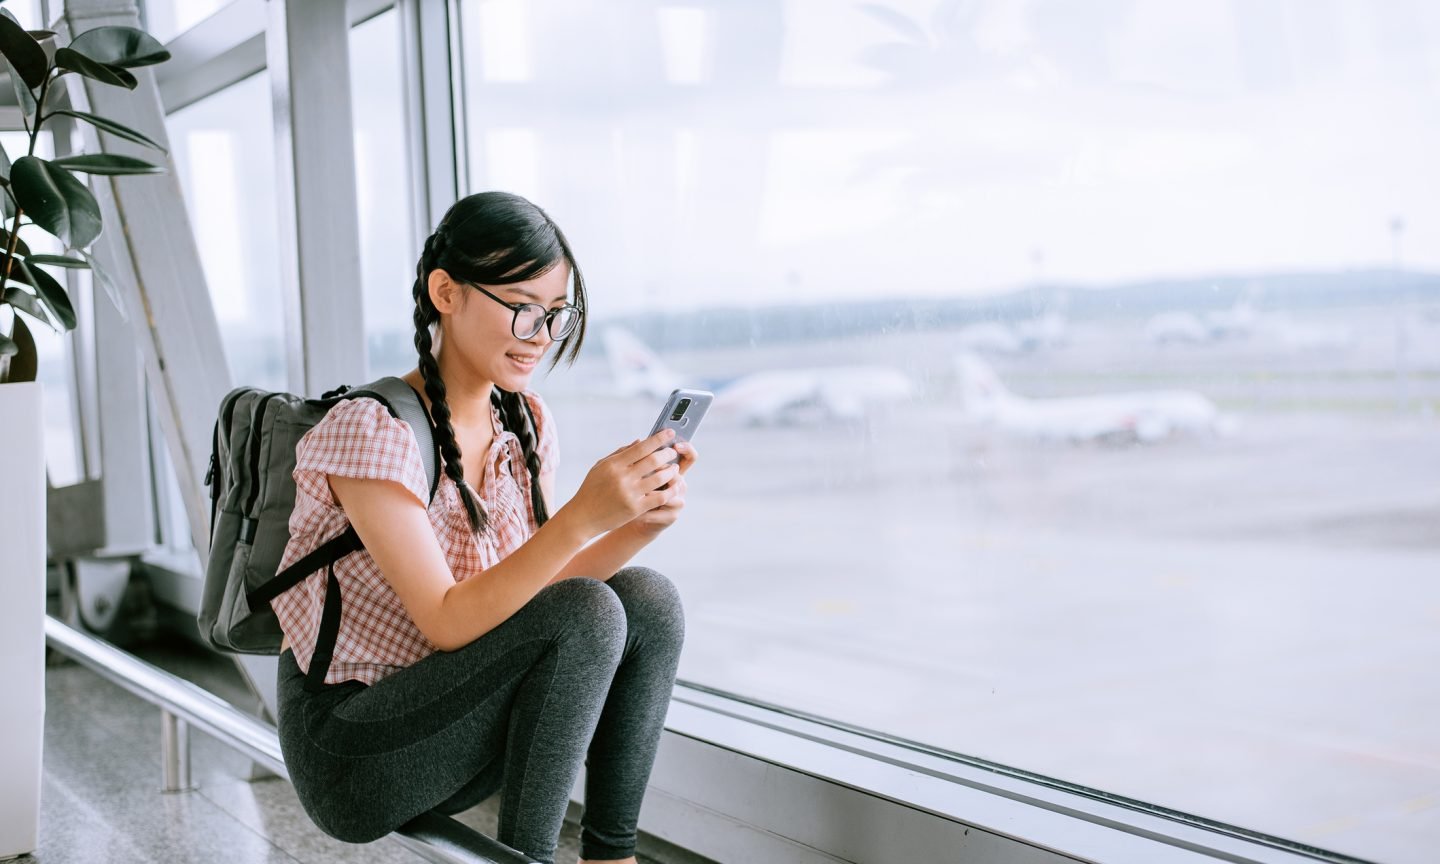 Easy methods to Contact Frontier Airways Buyer Service – NerdWallet